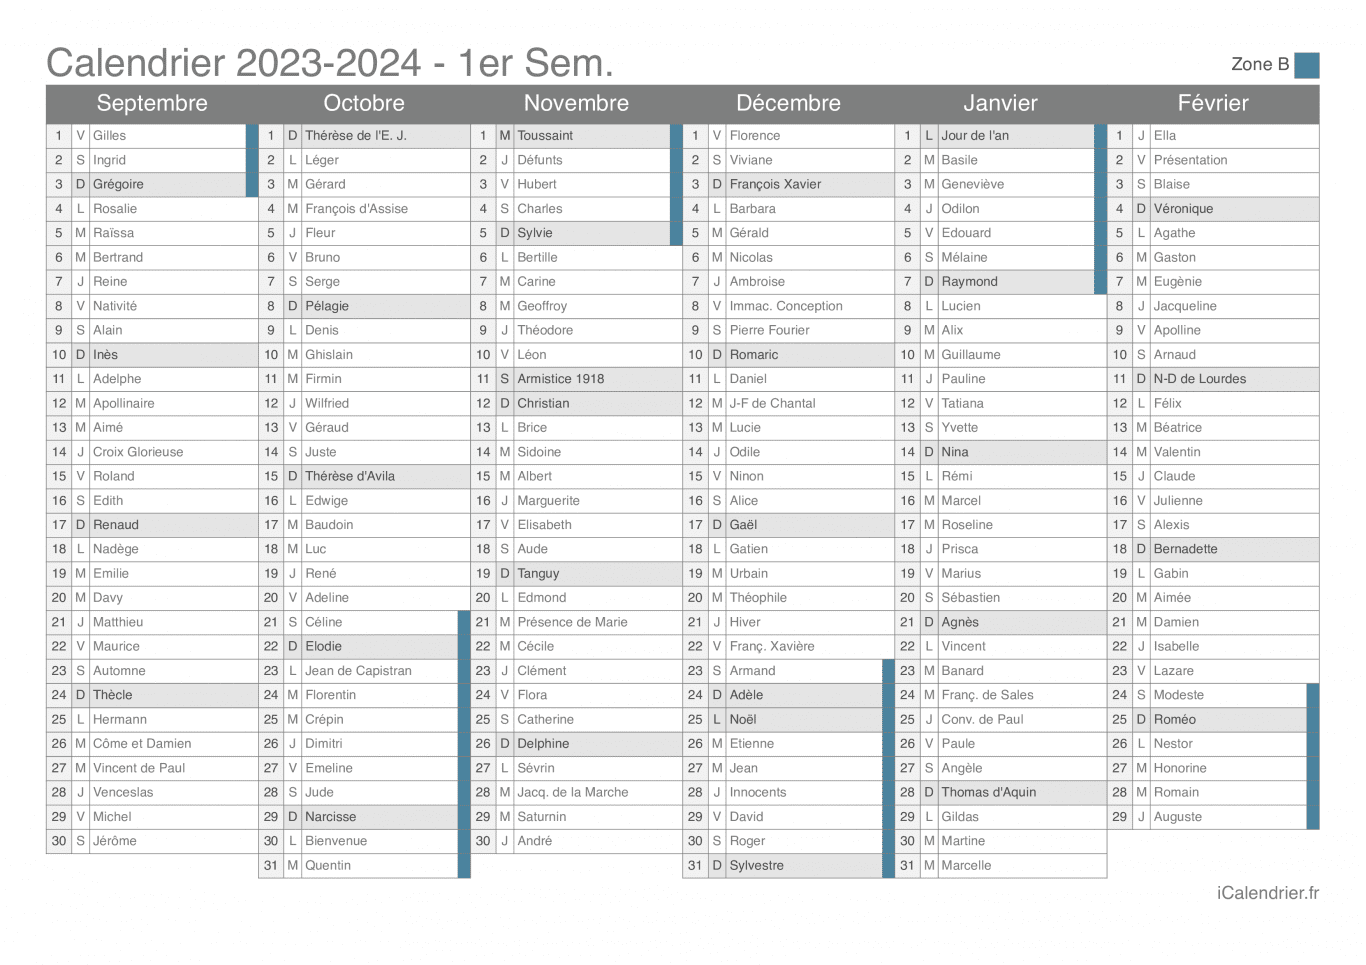 Calendrier des vacances scolaires 2023-2024 par semestre, zone B, avec fête du jour